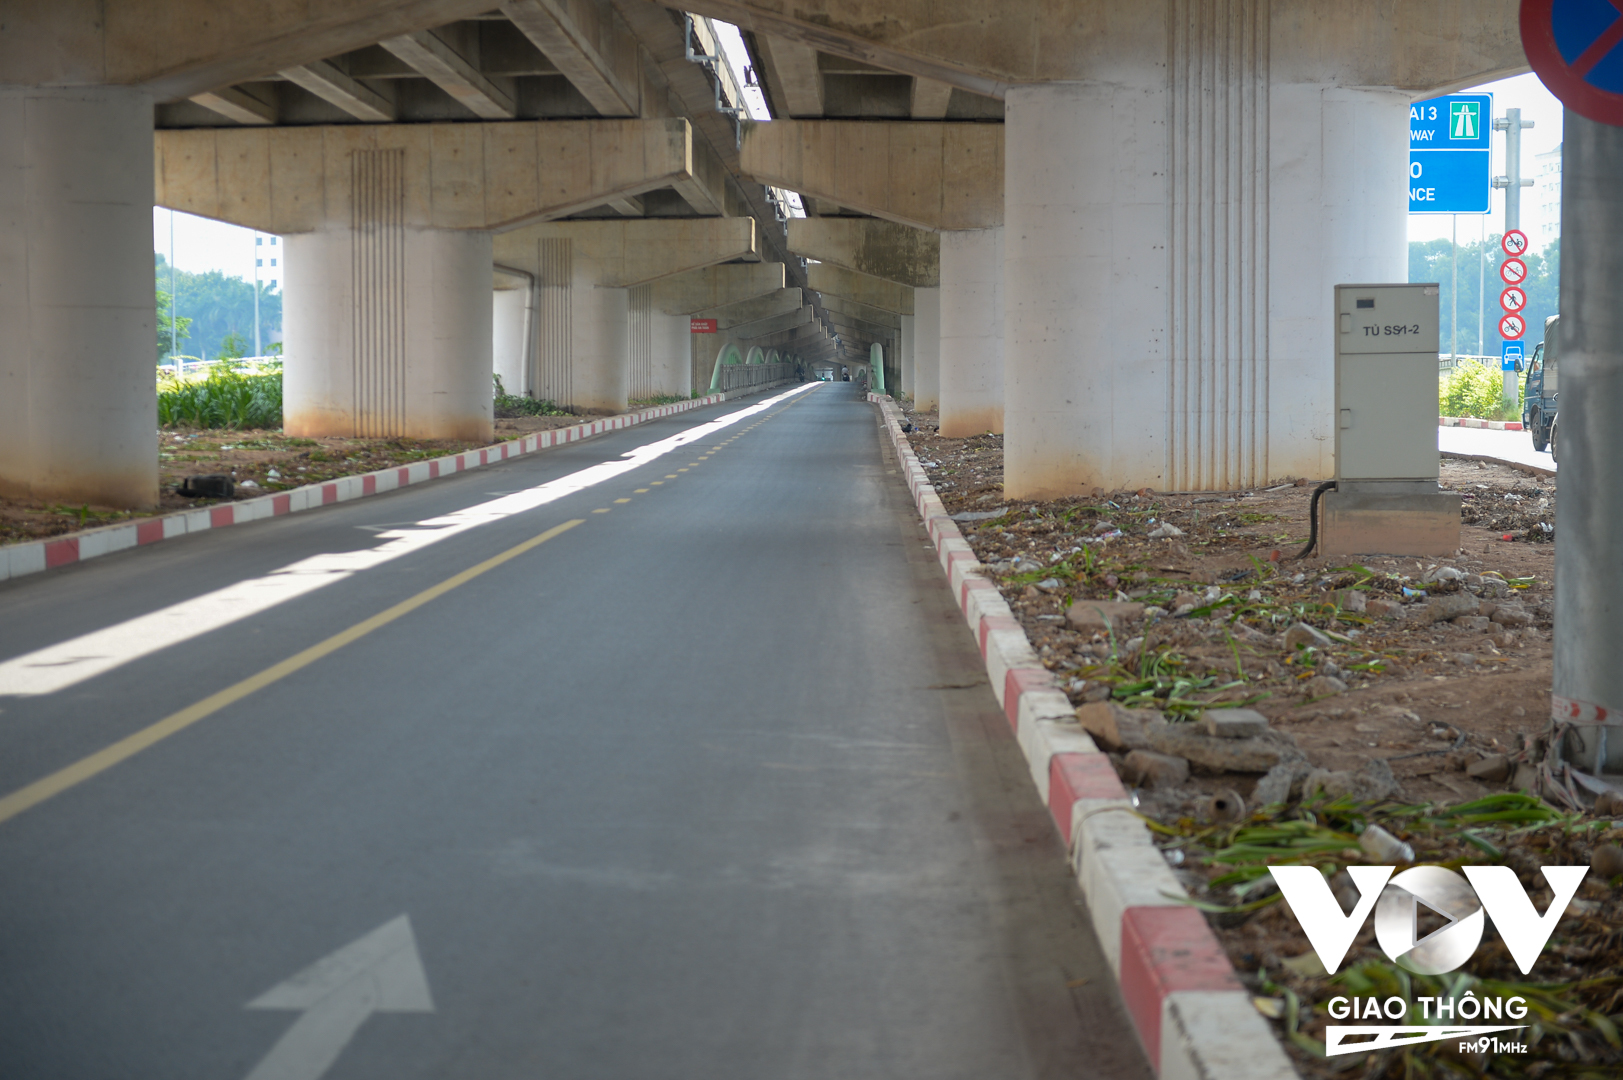 Sau buổi ra quân xử lý, đã không còn tình trạng xe ô tô đỗ trên cầu vòm sắt vượt hồ Linh Đàm, Hà Nội.